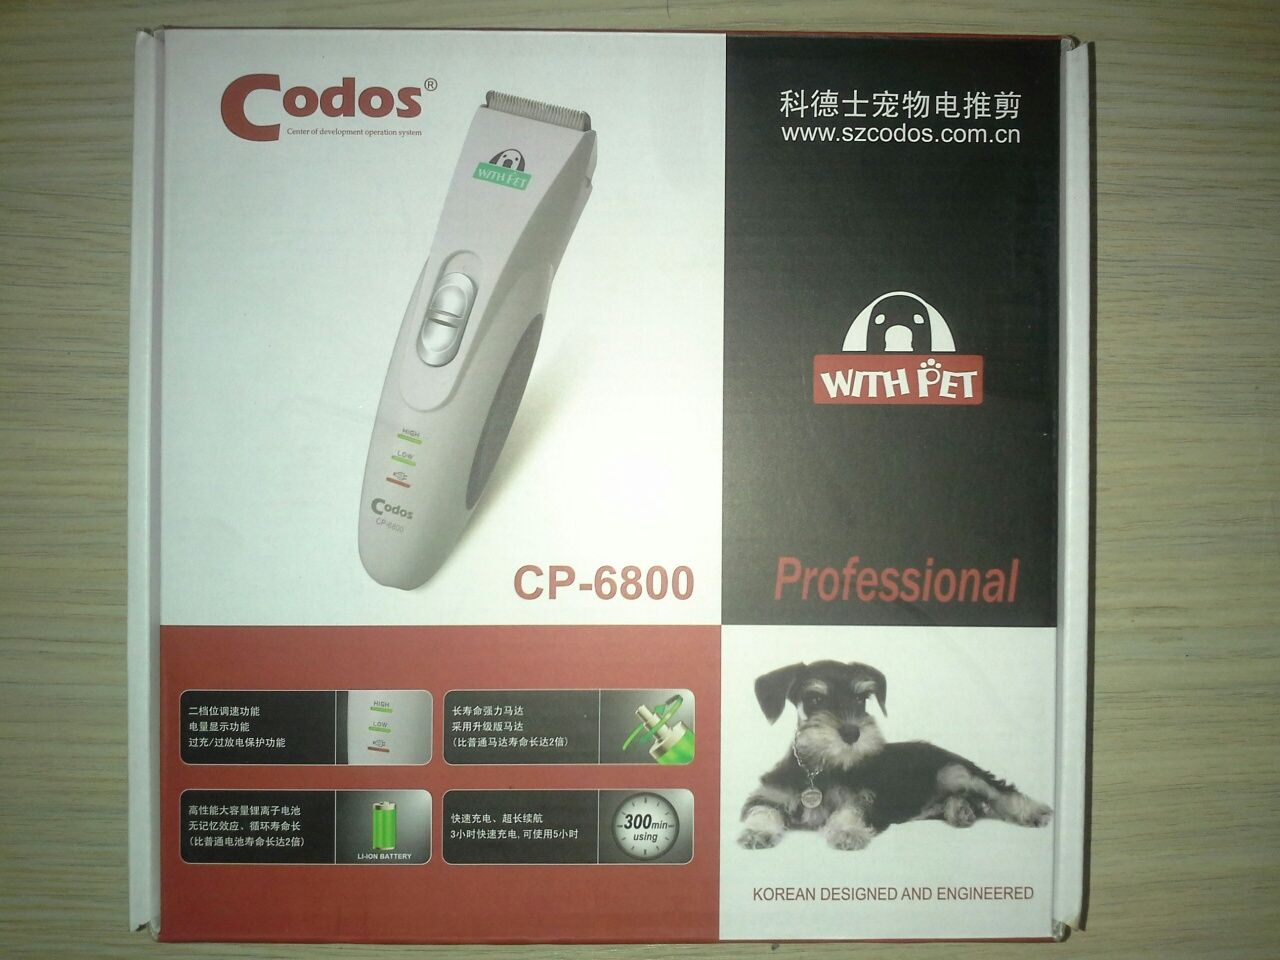 Новые комплекты запасных керамических ножей для зоо-машинок "Codos"!!!